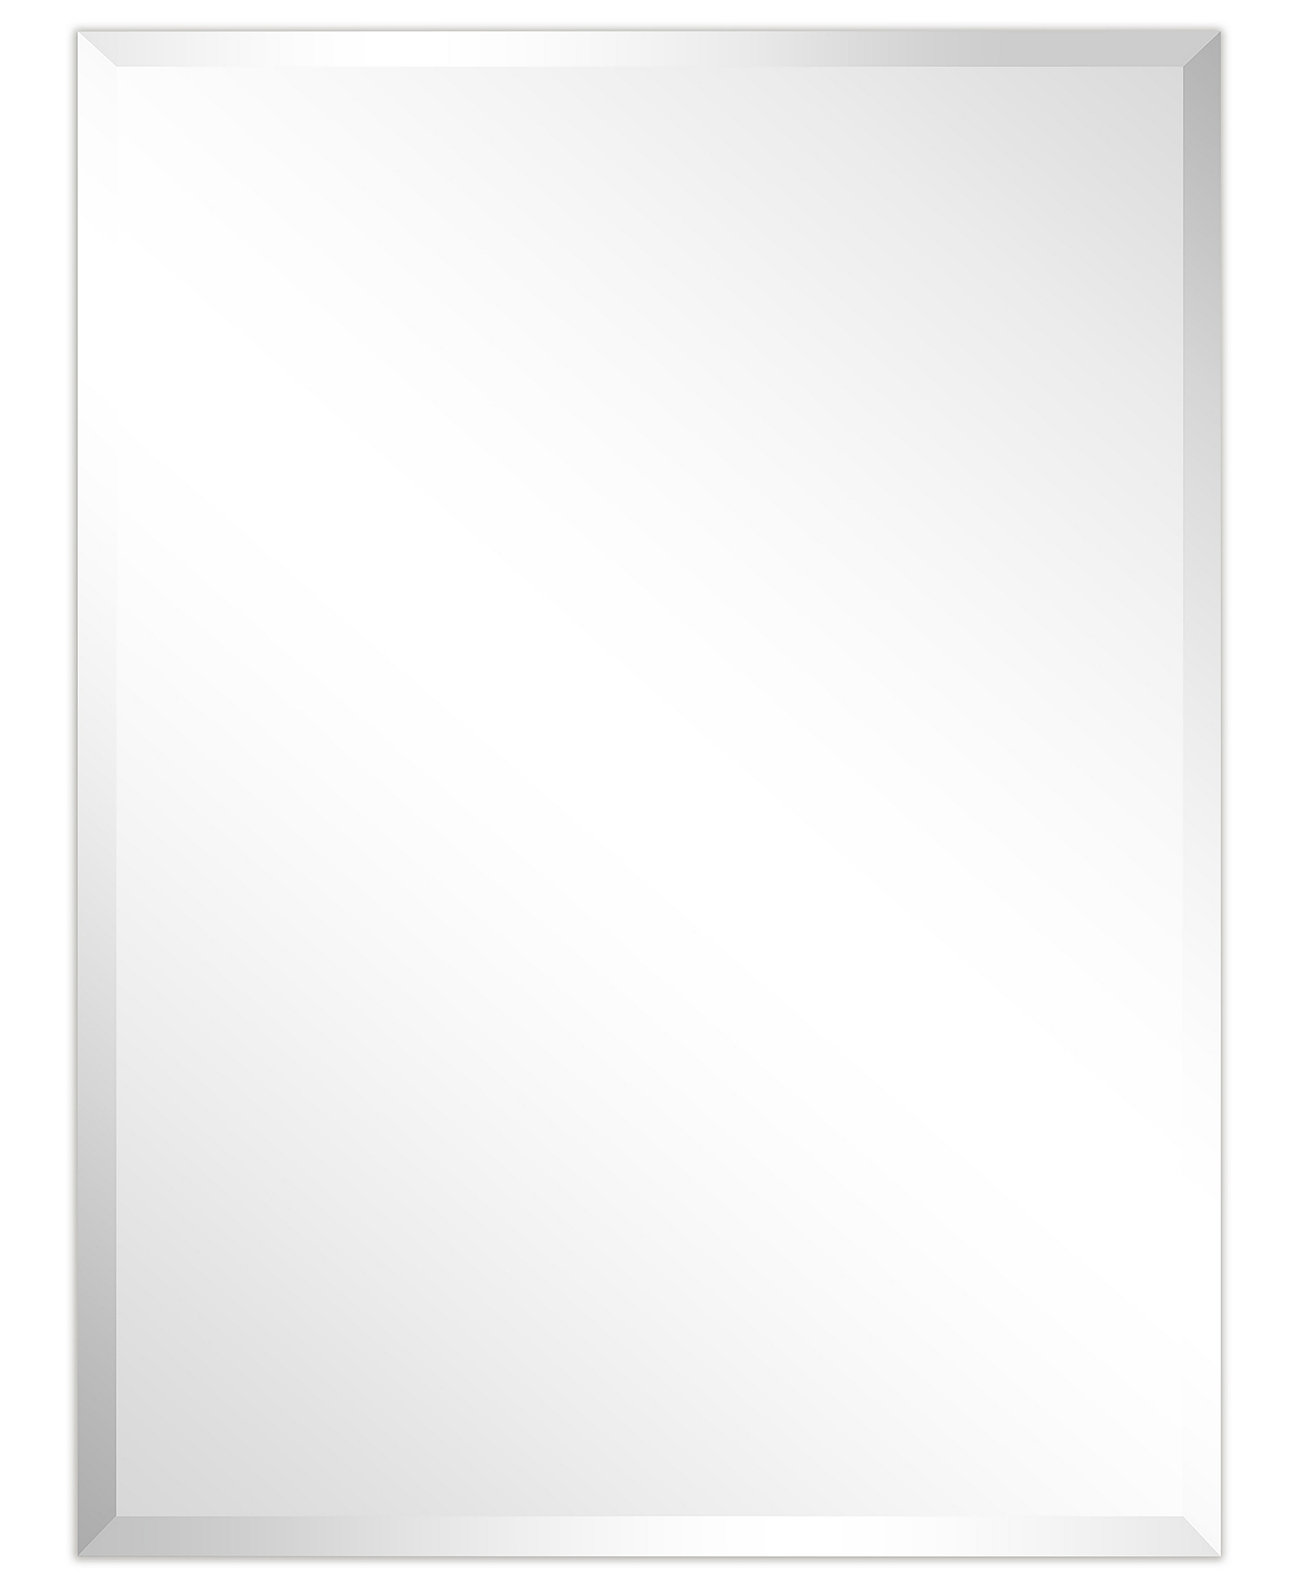 Безрамные зеркальные панели со скошенной призмой — 30 x 40 дюймов Empire Art Direct